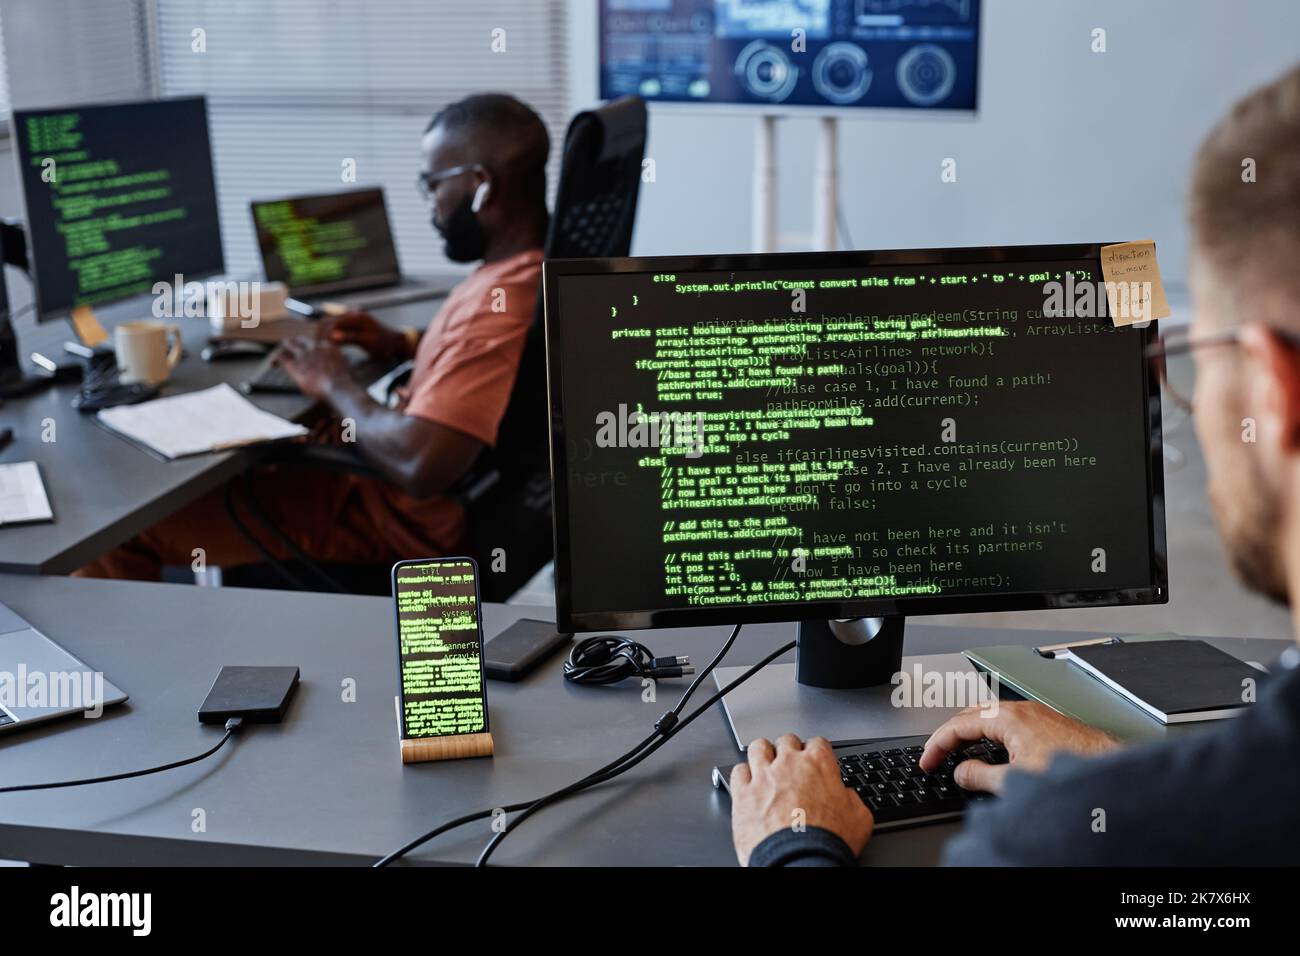 Immagine di sfondo dell'ufficio sviluppo software con righe di codice verdi sullo schermo del computer, spazio copia Foto Stock